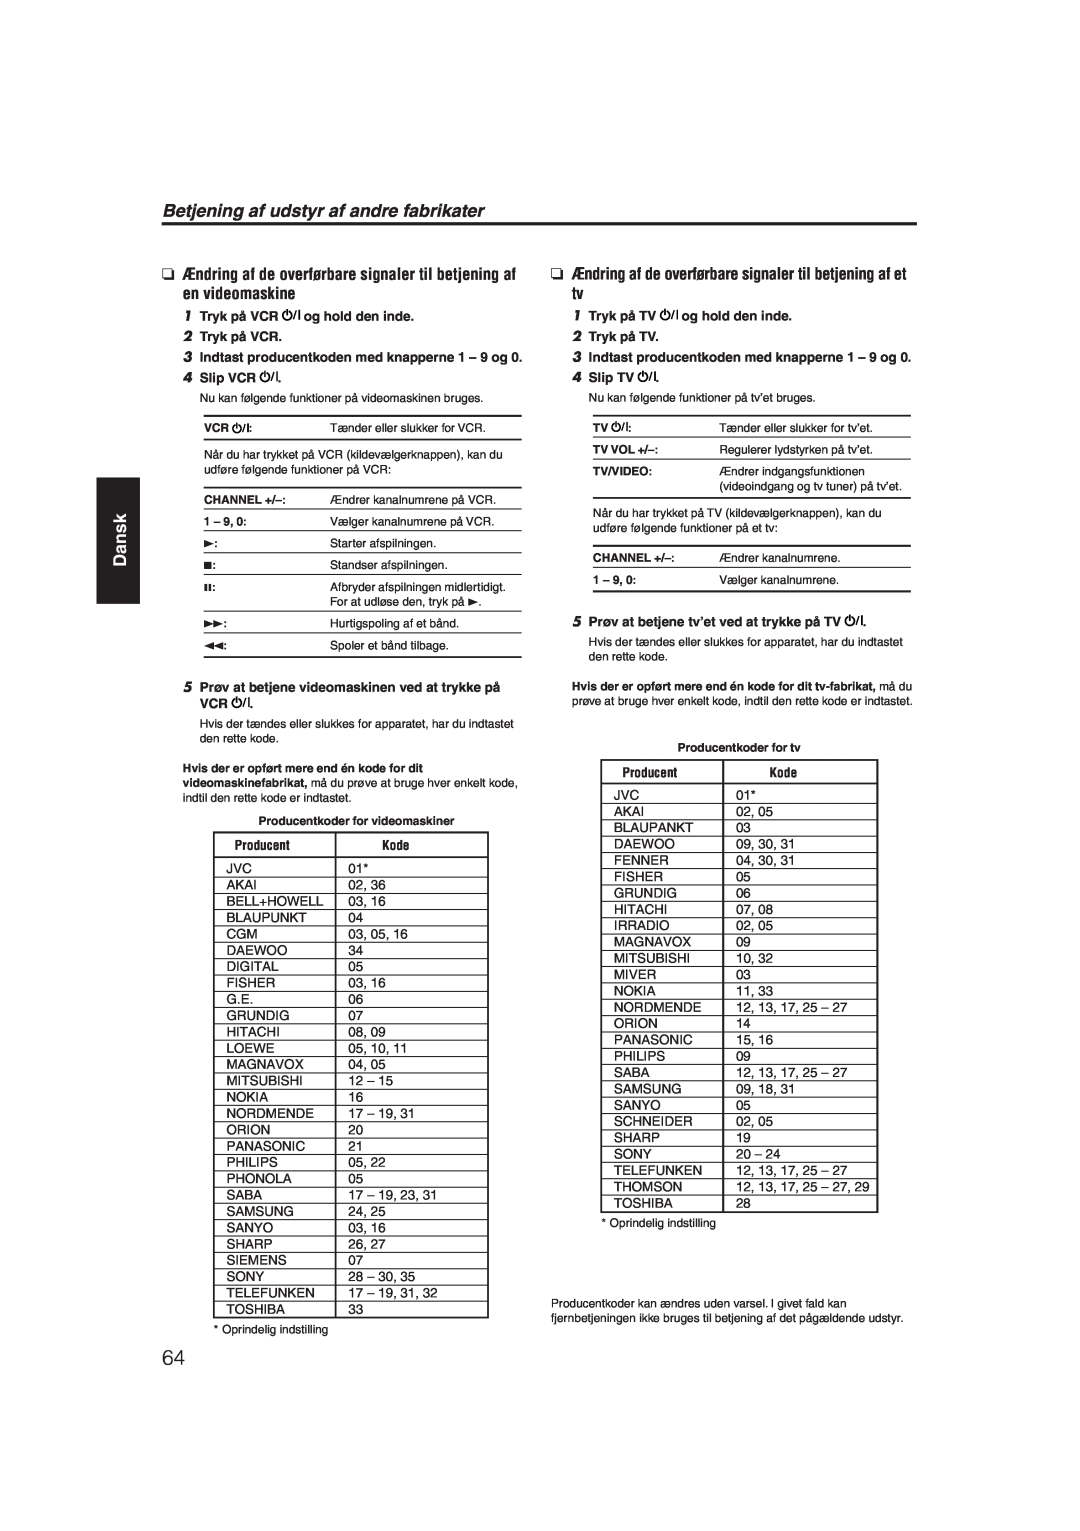 JVC RX-ES1SL manual Betjening af udstyr af andre fabrikater, Dansk 